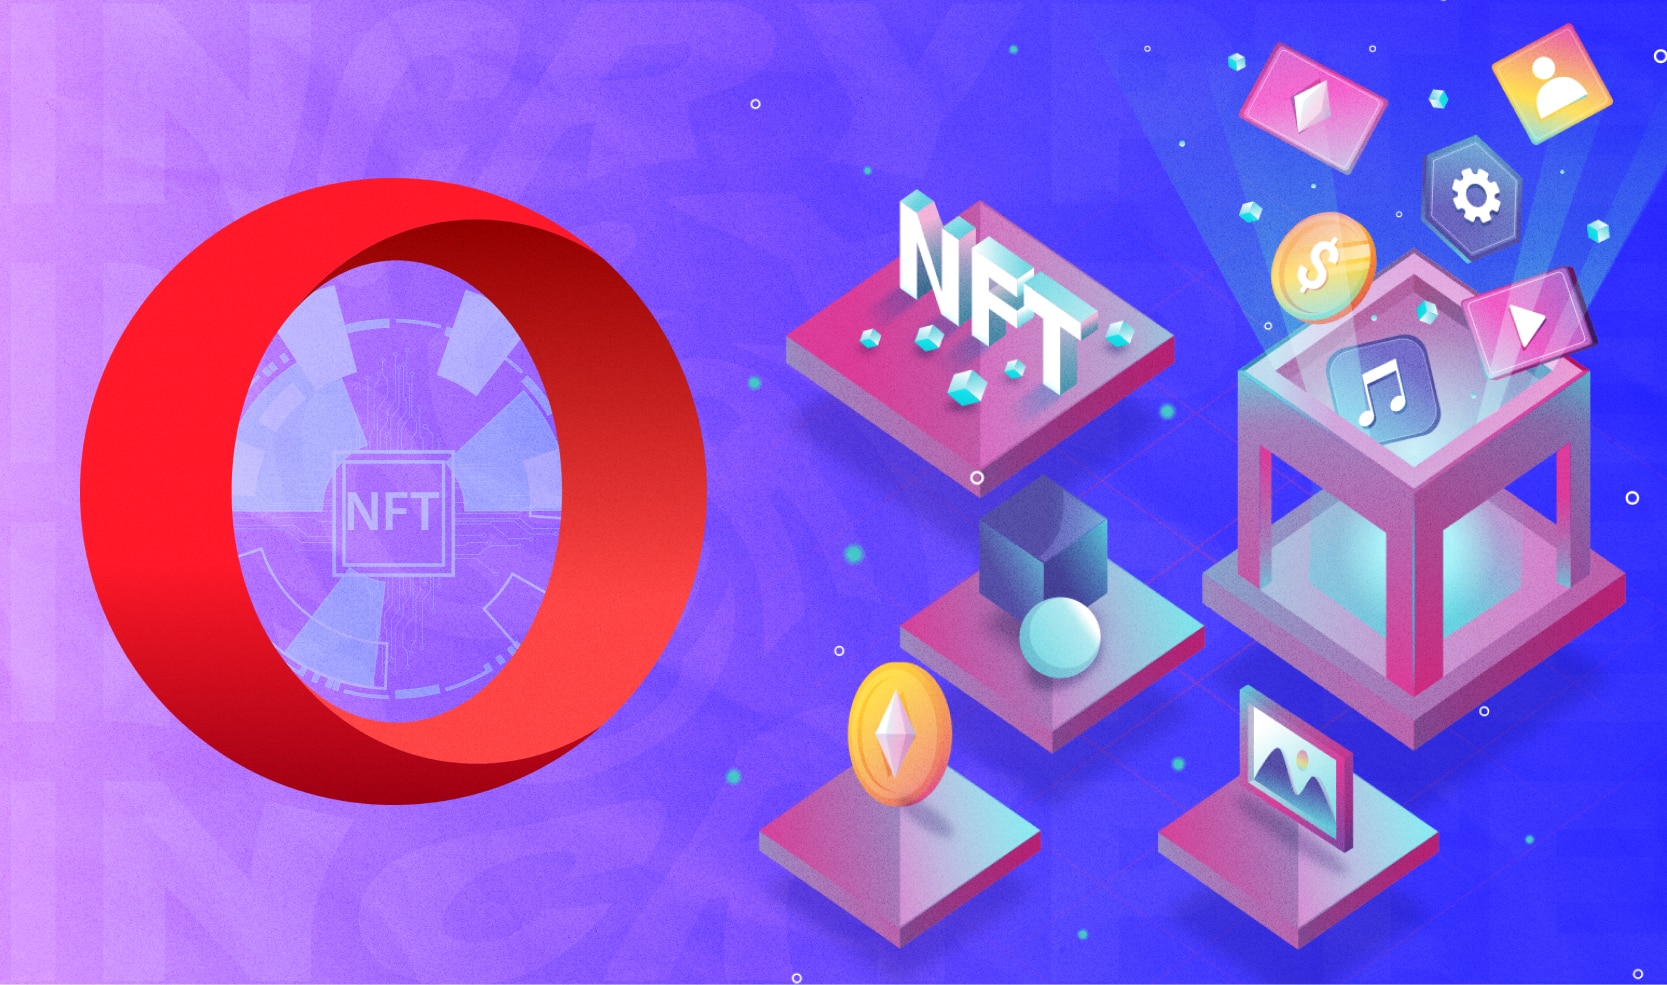 Opera додала опцію для безкоштовного створення NFT. Головний колаж новини.